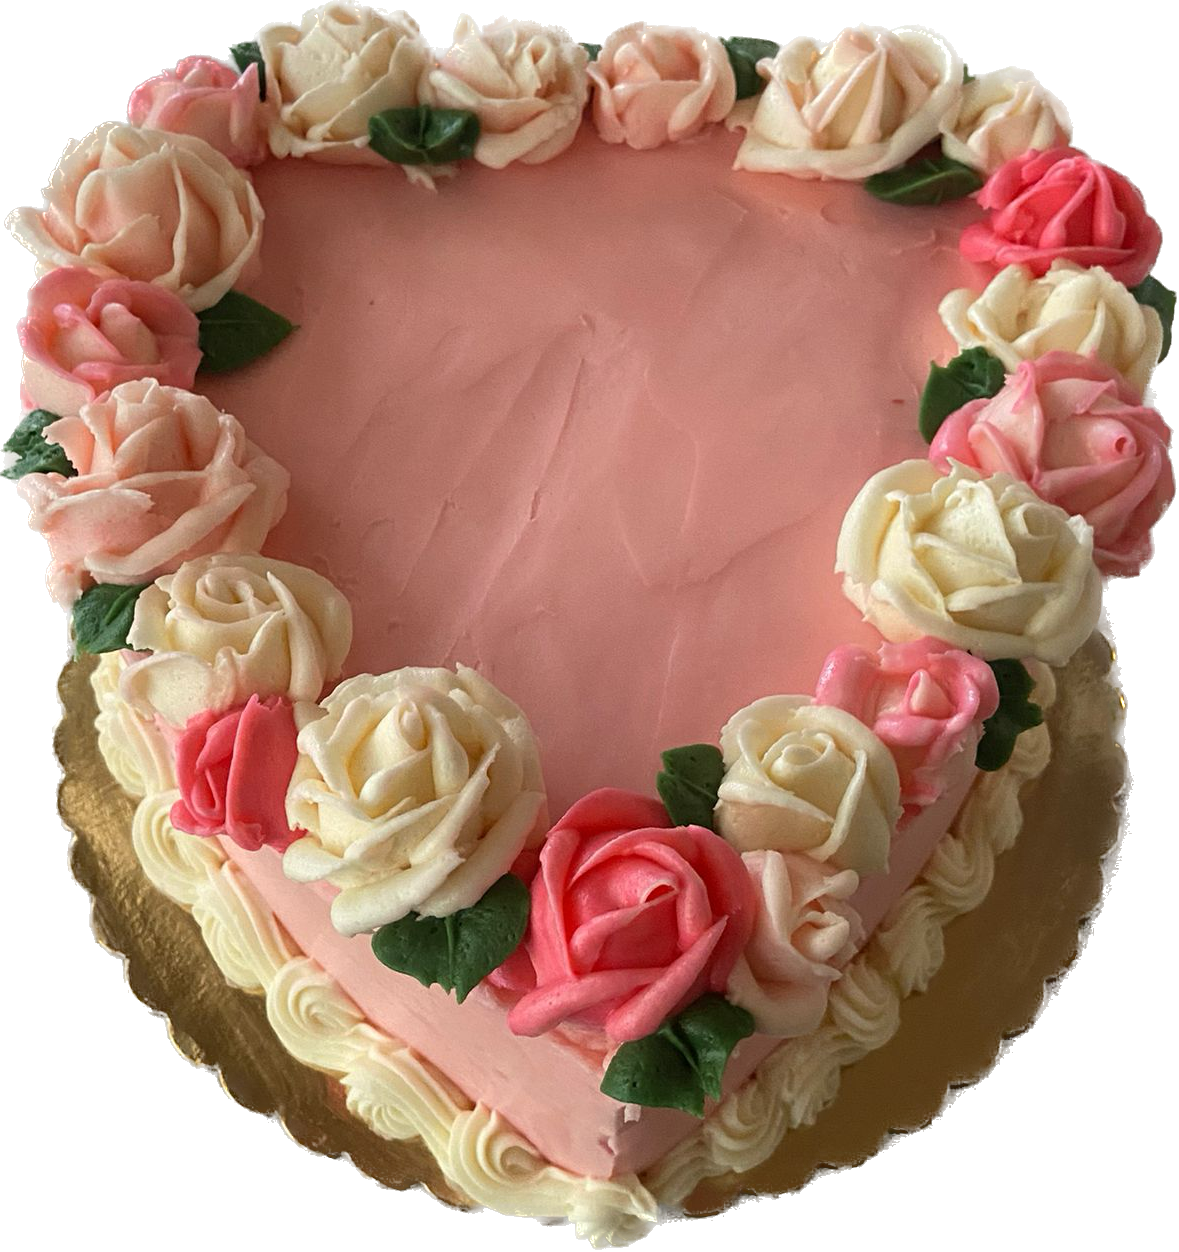 Heart Cake - Design 5-hdcinema.vn